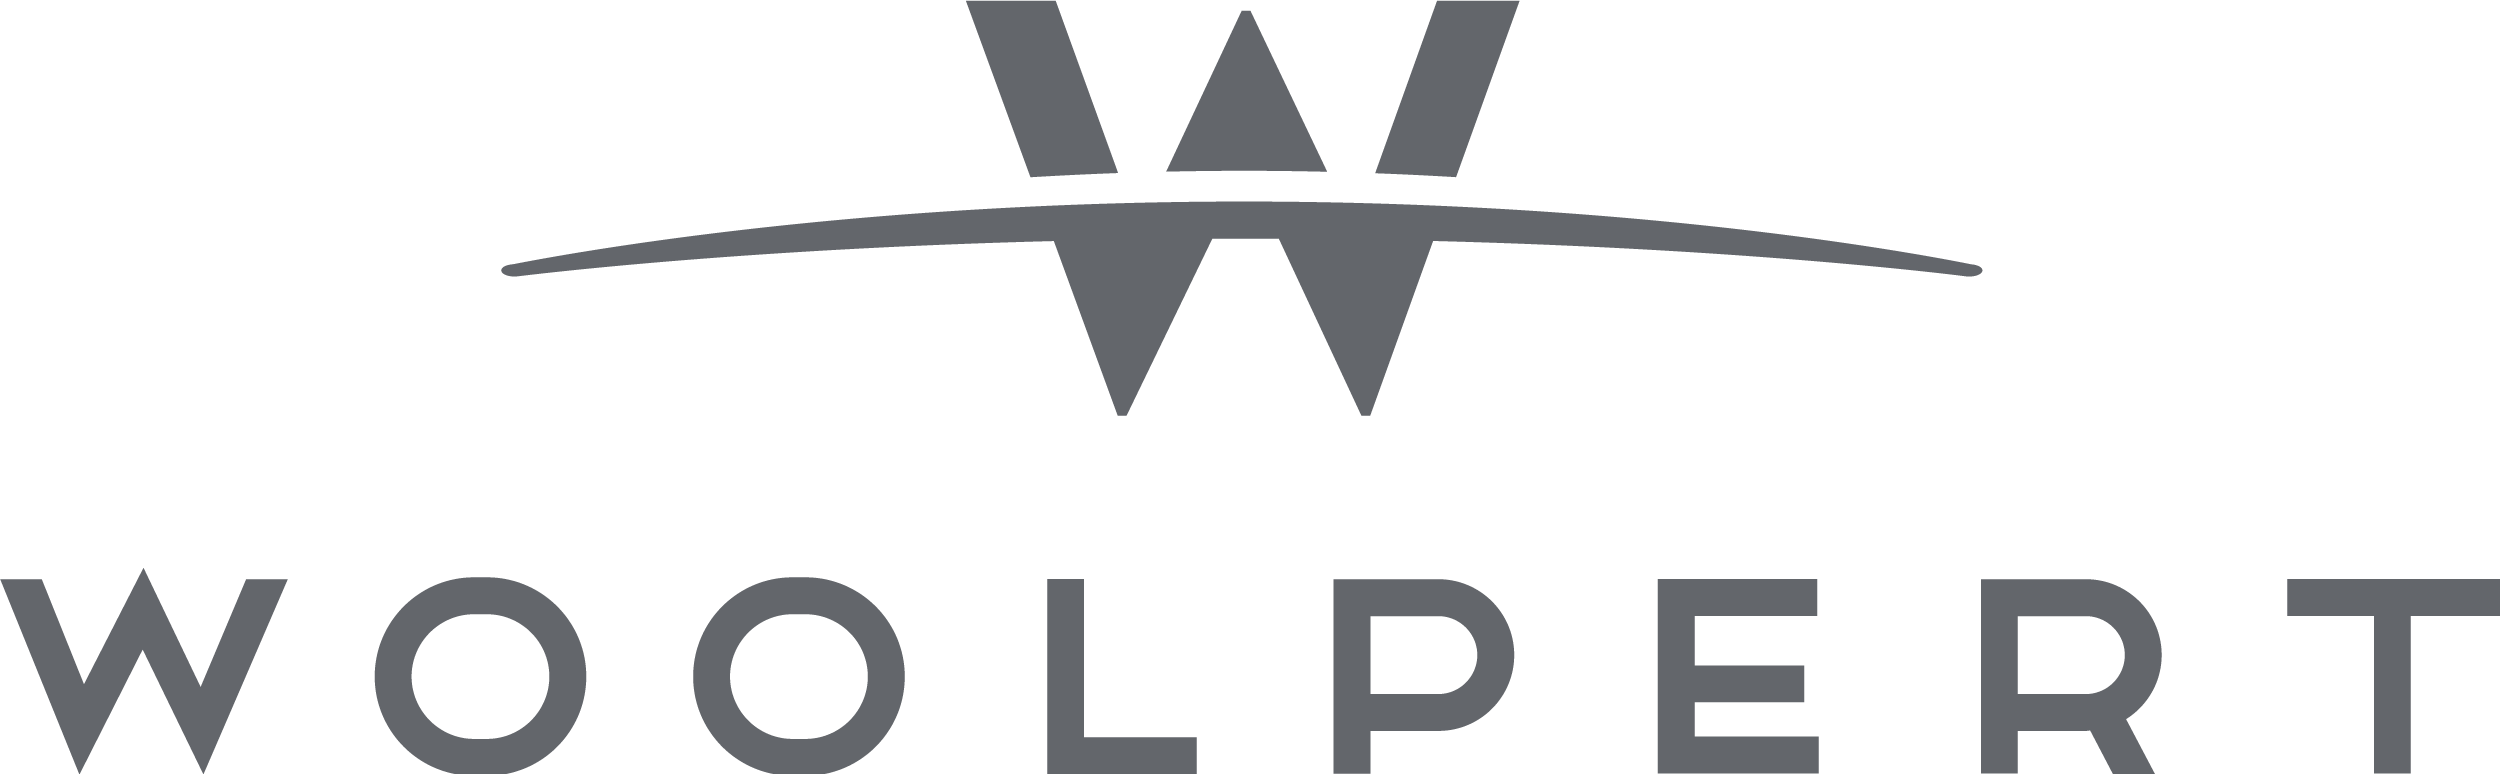 woolpert 로고